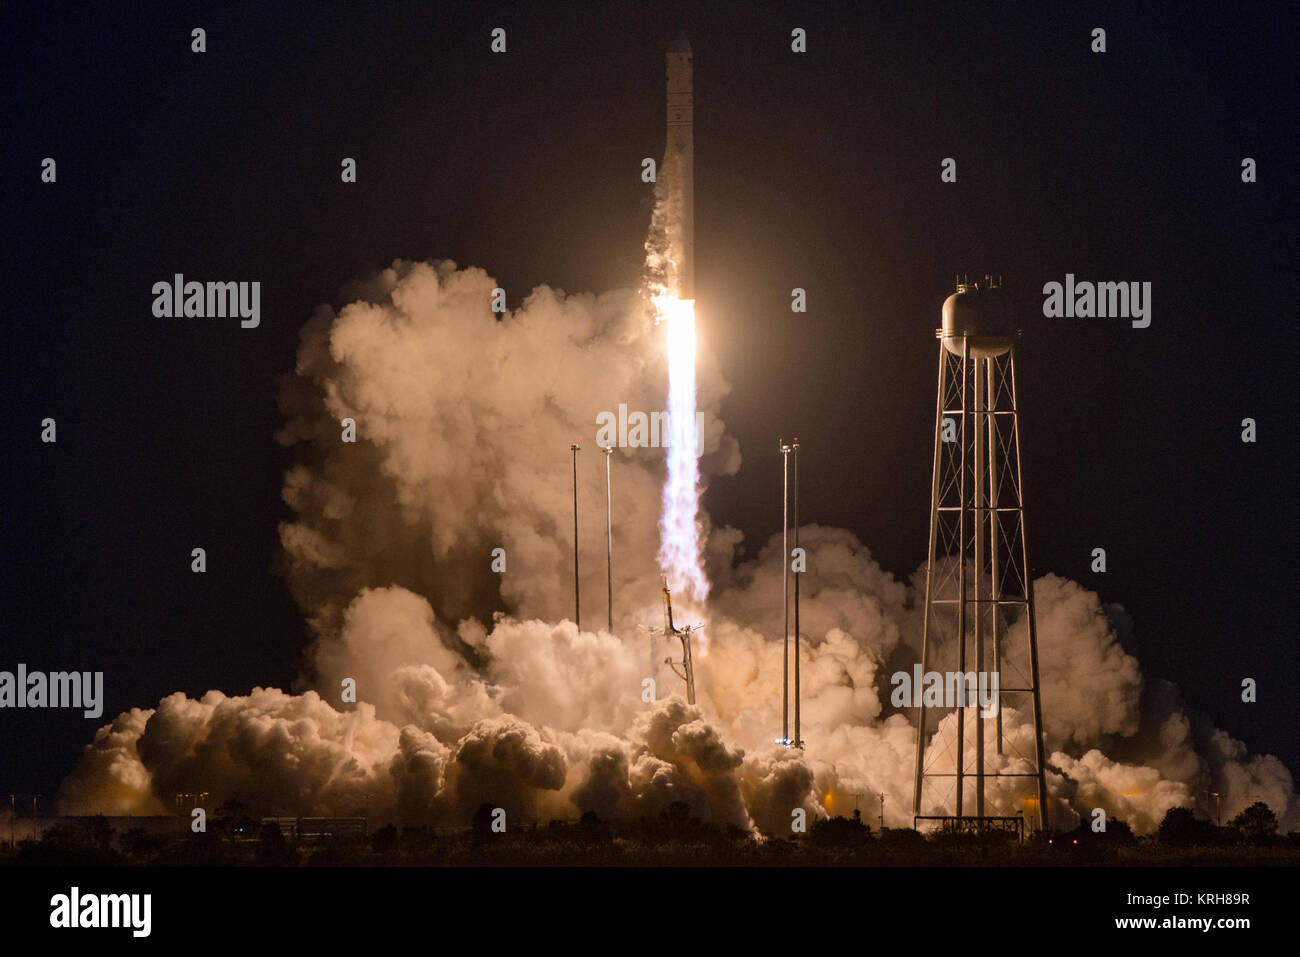 L'orbitale ATK Antares rocket, con il veicolo spaziale Cygnus onboard, lancia da Mid-Atlantic Spaceport regionale Pad 0A, Martedì, 28 ottobre 2014, alla NASA Wallops Flight Facility in Virginia. L'Antares rocket ha sofferto una grave anomalia dopo il lancio, risultante nella perdita di entrambi i veicoli. Il Cygnus navicella spaziale è stato riempito con forniture slated per la Stazione spaziale internazionale, compresa la scienza esperimenti, esperimento hardware, pezzi di ricambio, e disposizioni dell'equipaggio. Photo credit: (NASA/Joel Kowsky) ATK orbitale Antares lancio (201410280021HQ) Foto Stock